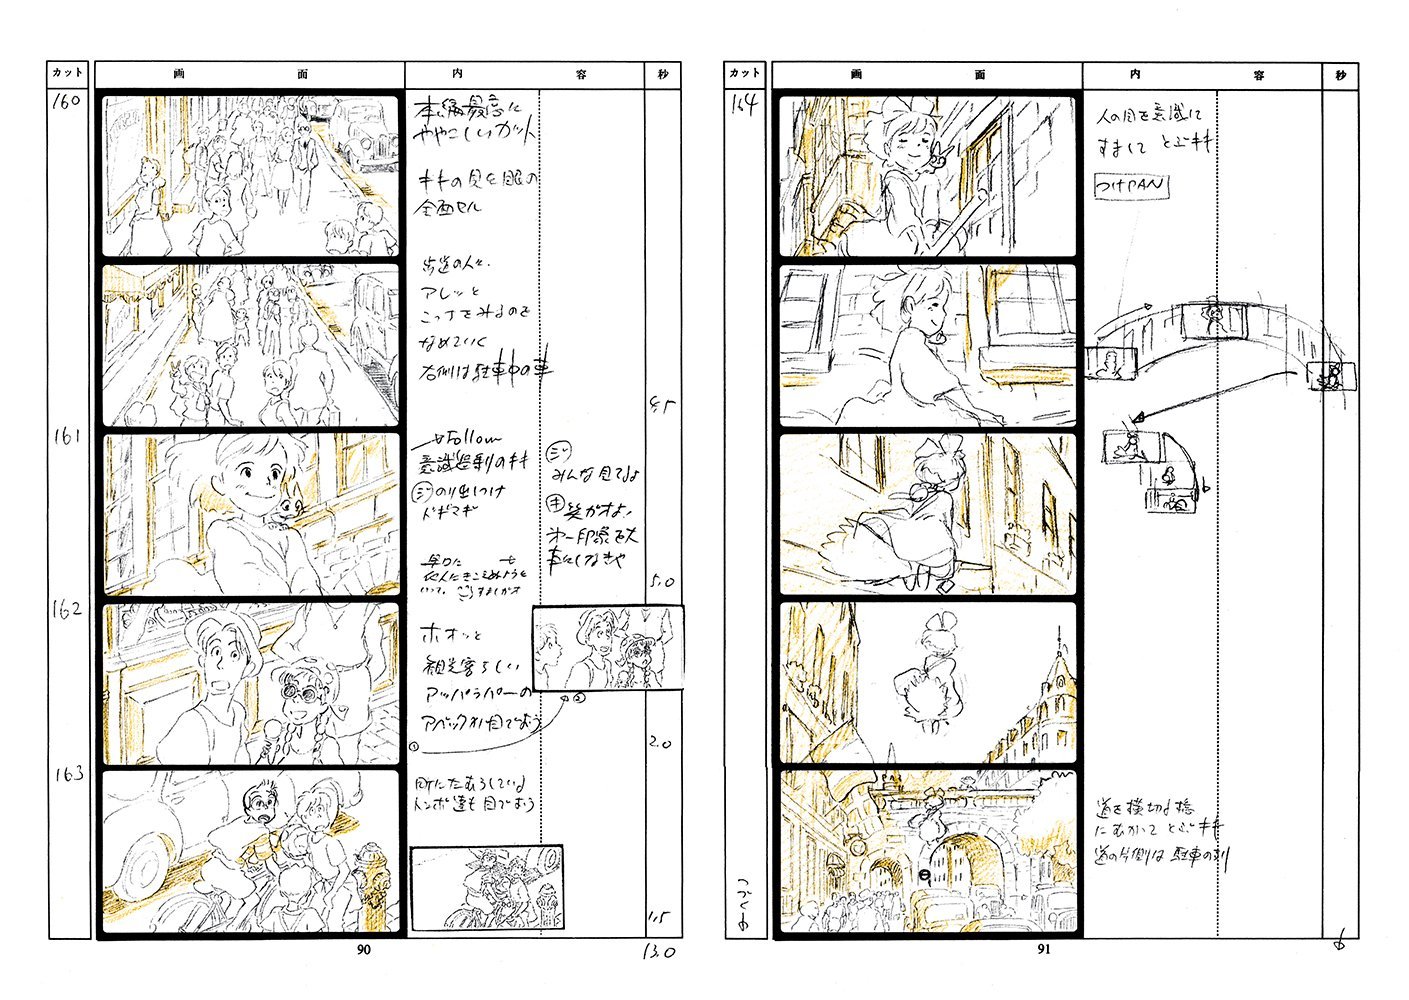 akira storyboards pdf